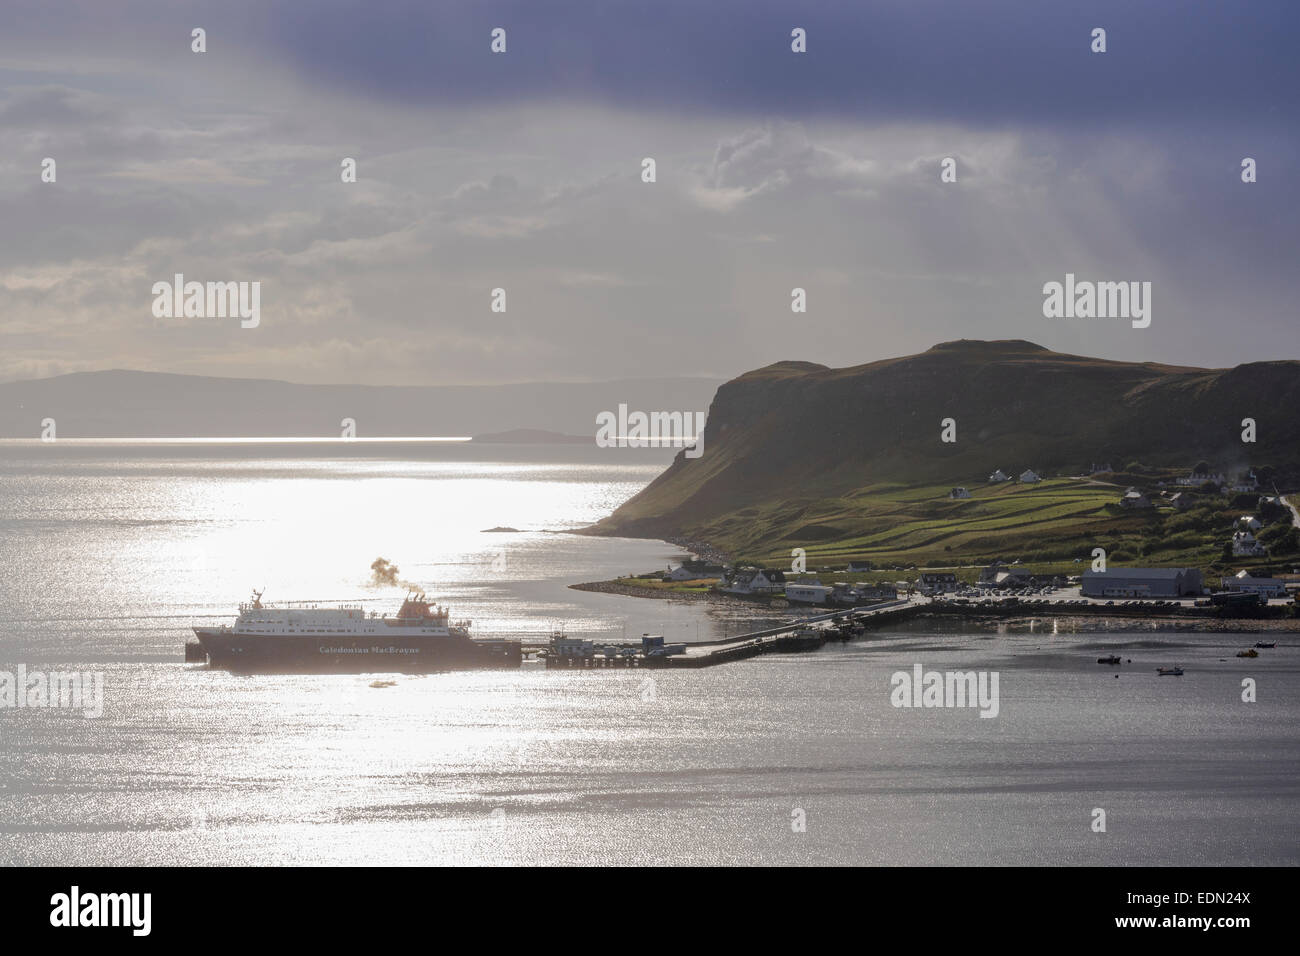 Hermosa hebridean luz a uig skye con calmac ferry Foto de stock